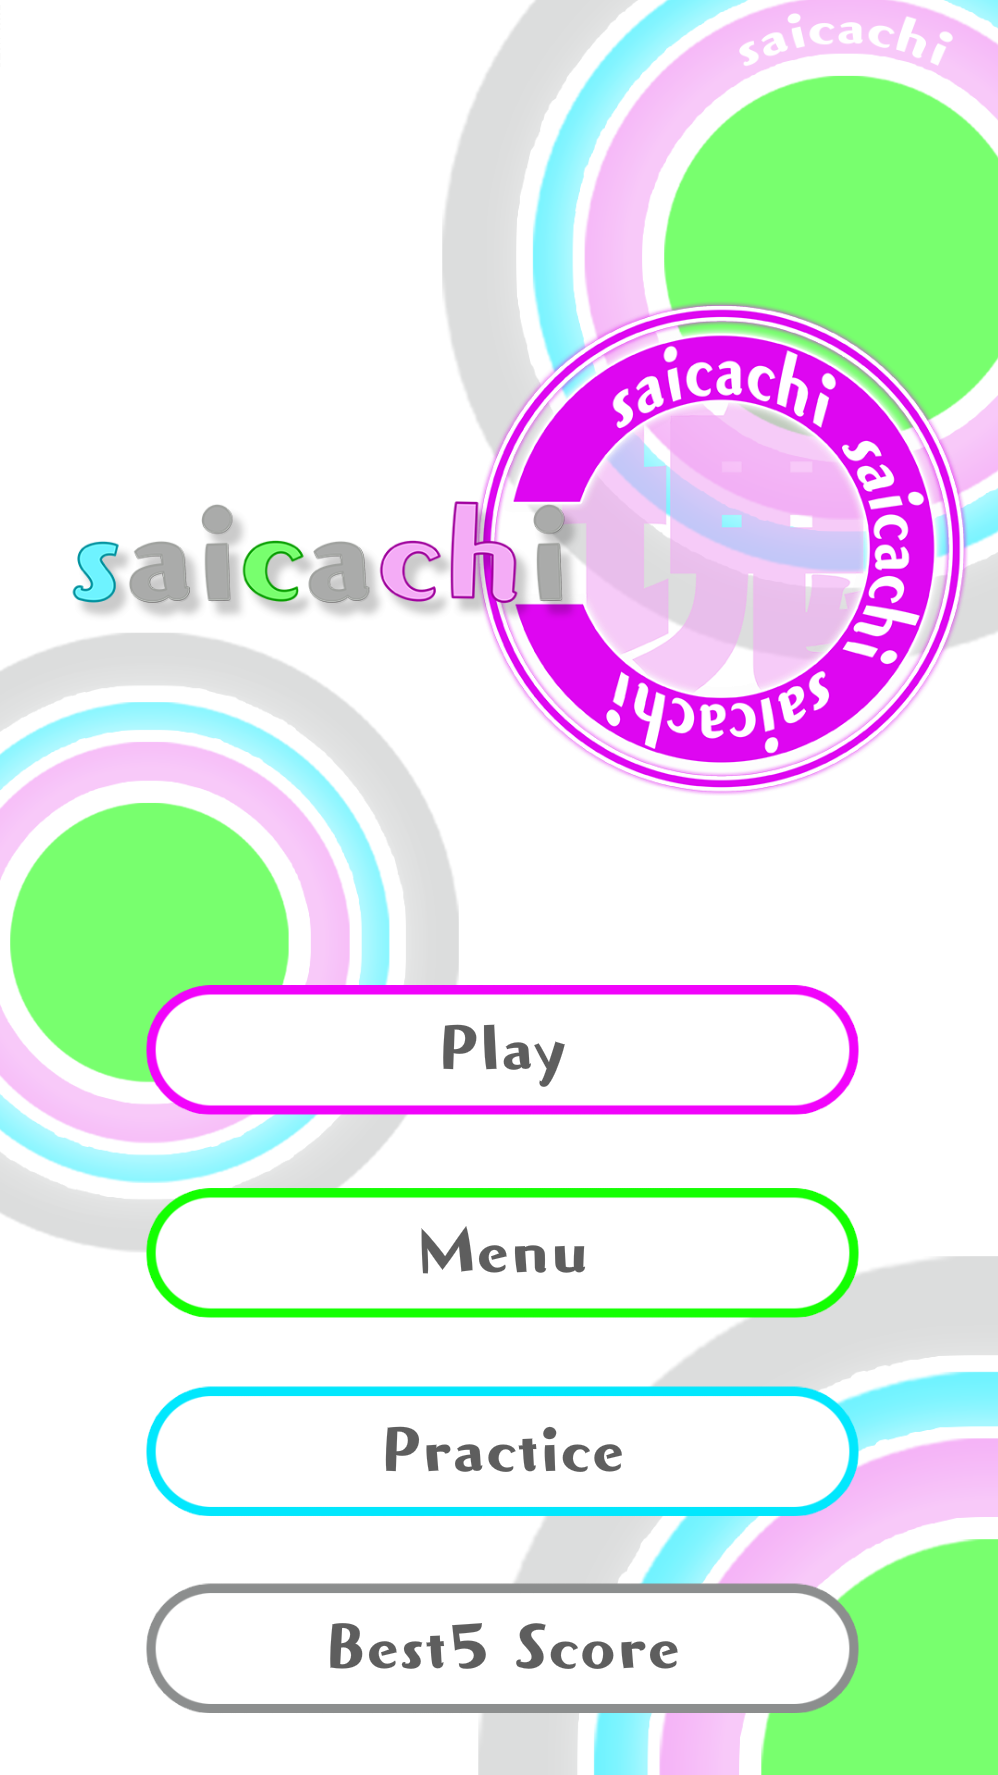 サンダーボルト 新感覚パズルゲームアプリ Saicachi を配信開始 数字が描かれた同色の塊同士をくっつけて大きな数字の塊を作ろう Social Game Info